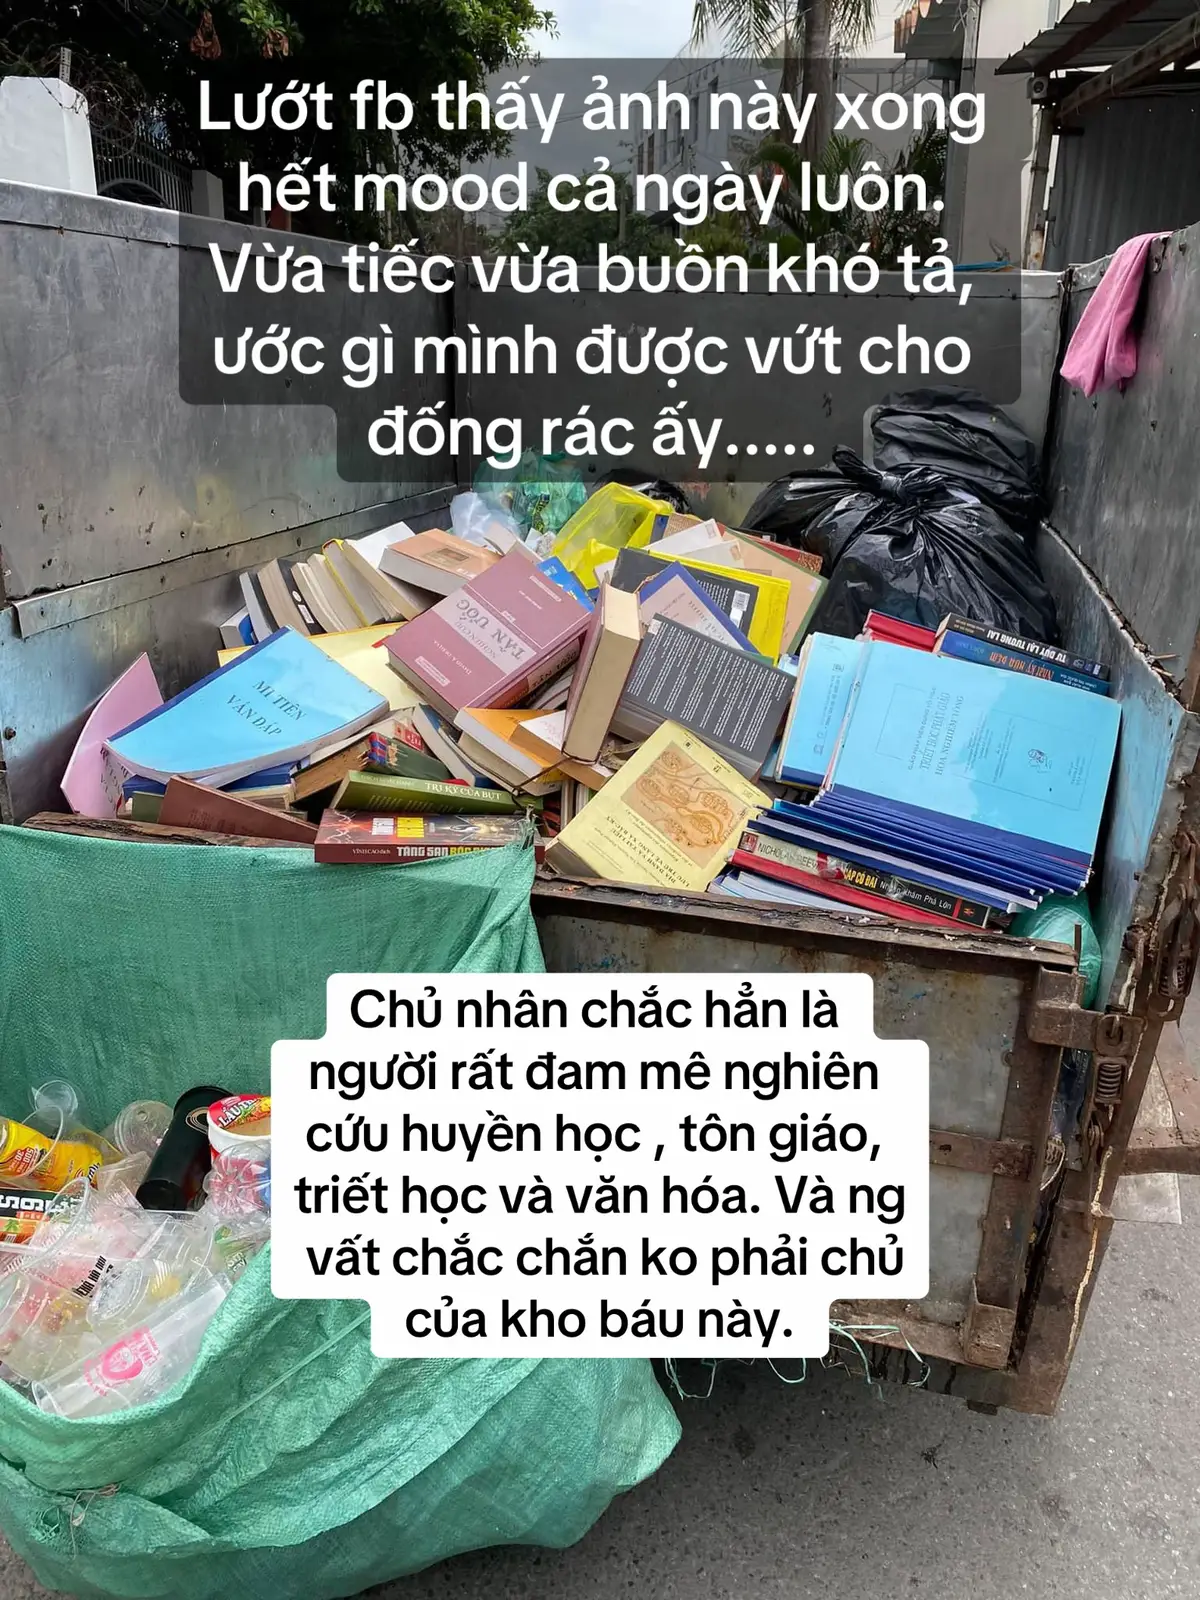 Khi tôi ch.et hãy giúp tôi giữ gìn sách của tôi, đừng đối xử với chúng như thế này..... #sach #sachhay #BookTok #xh #tinhyeu 